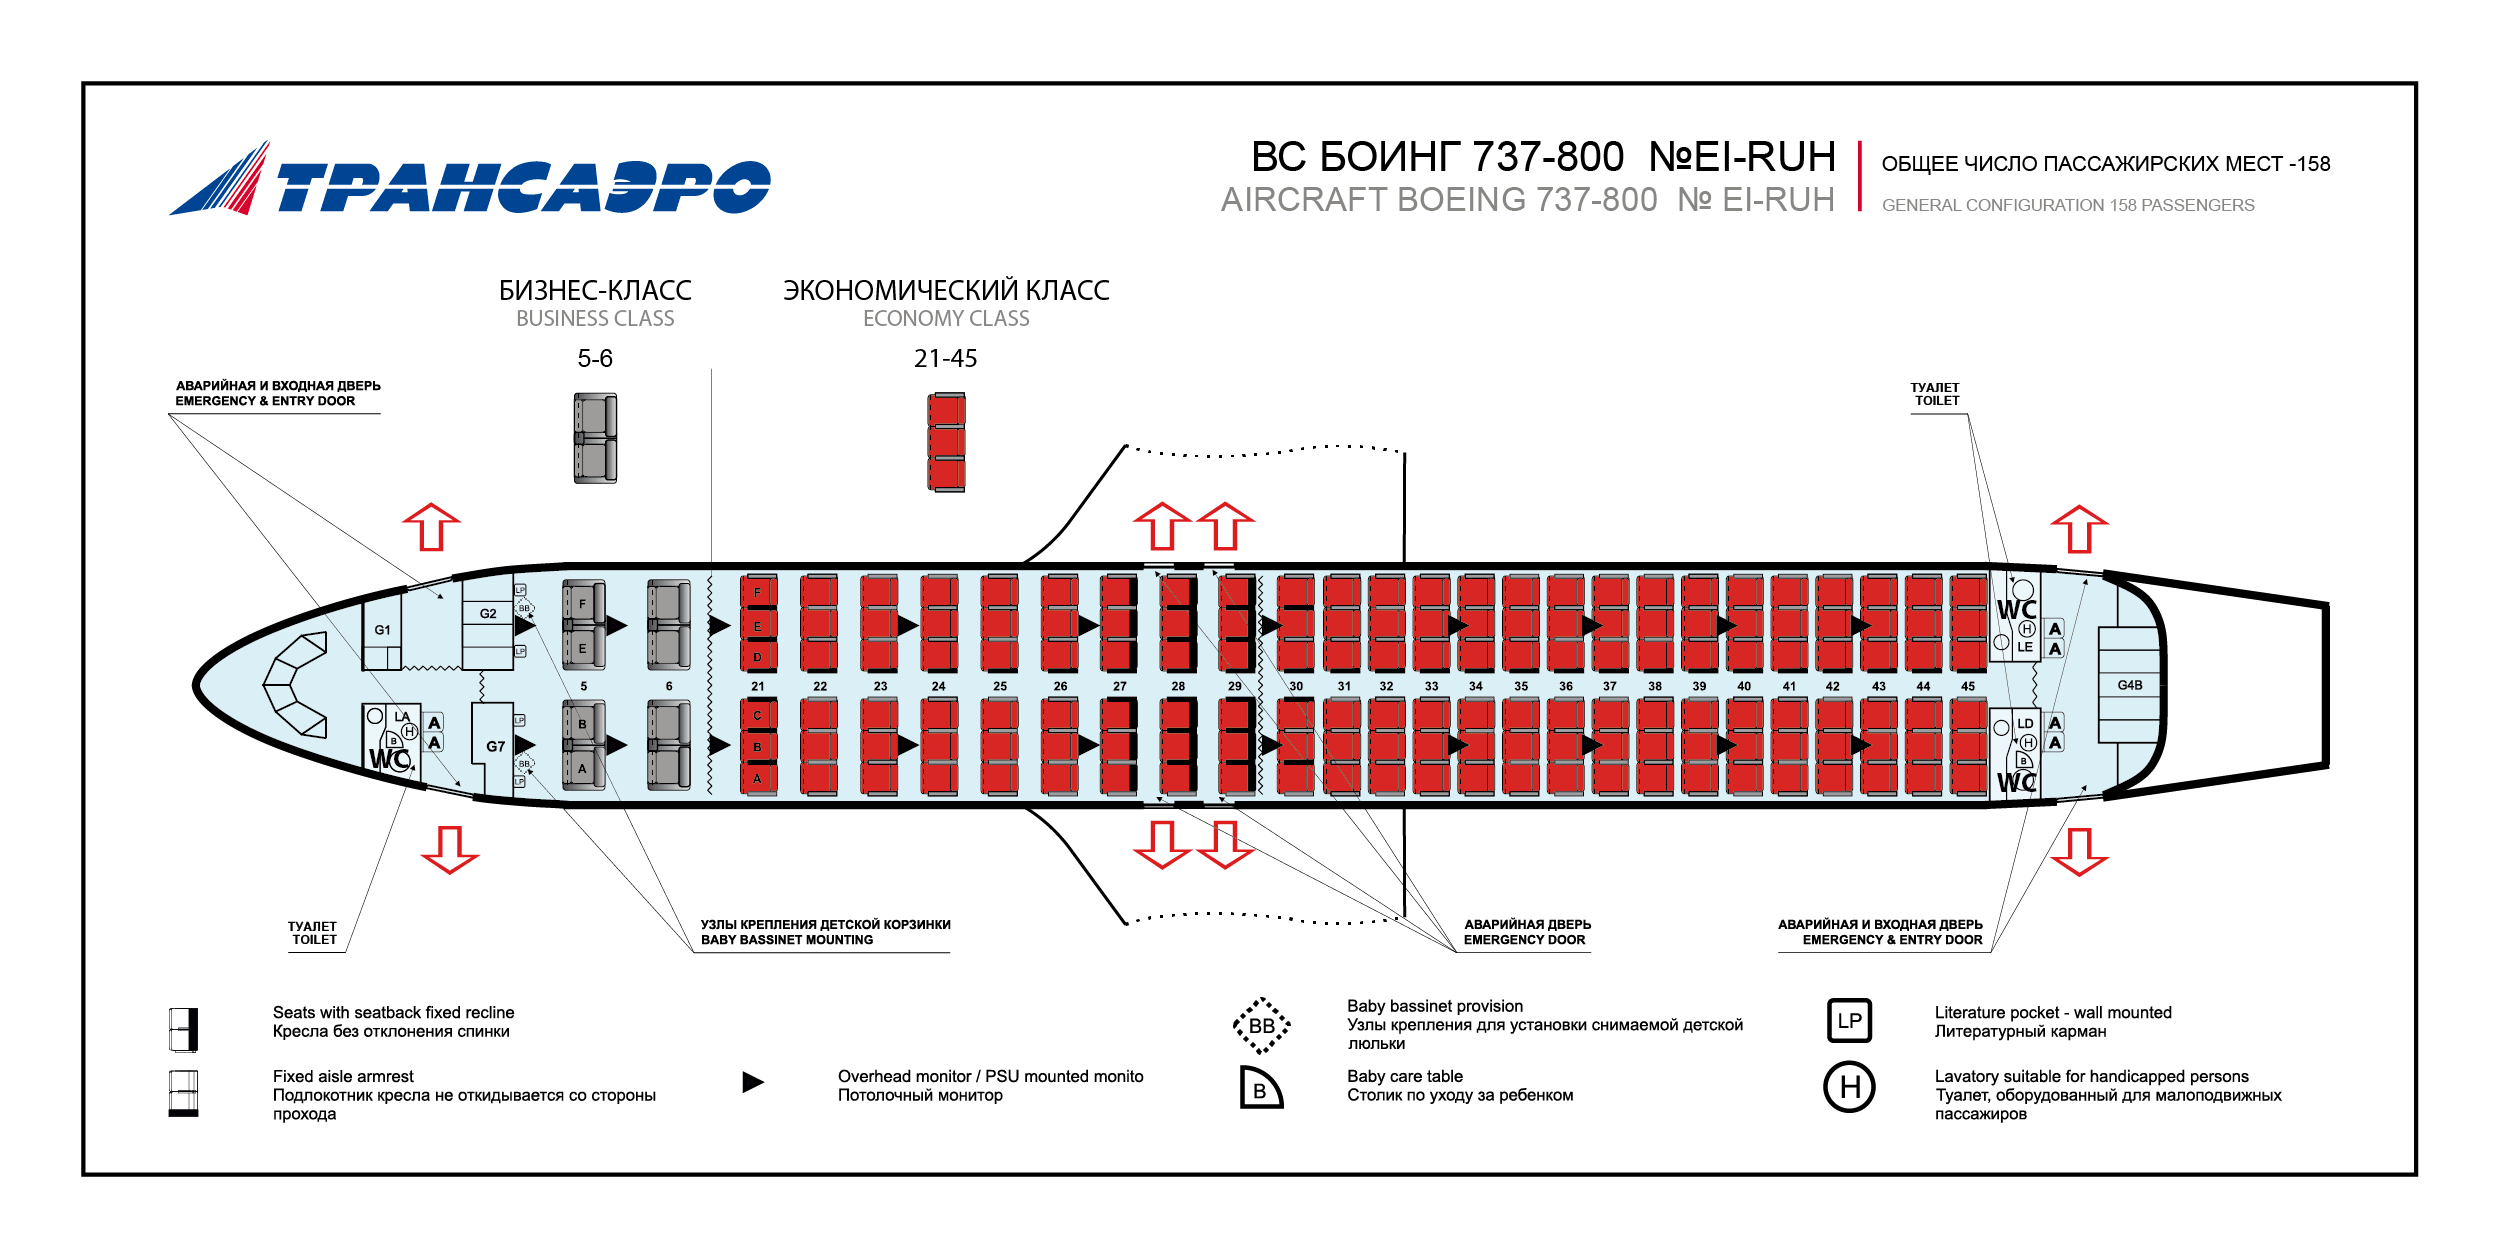 Схема салона и лучшие места боинг 737-800: аэрофлот, россия, нордавиа, ютэйр | авиакомпании и авиалинии россии и мира